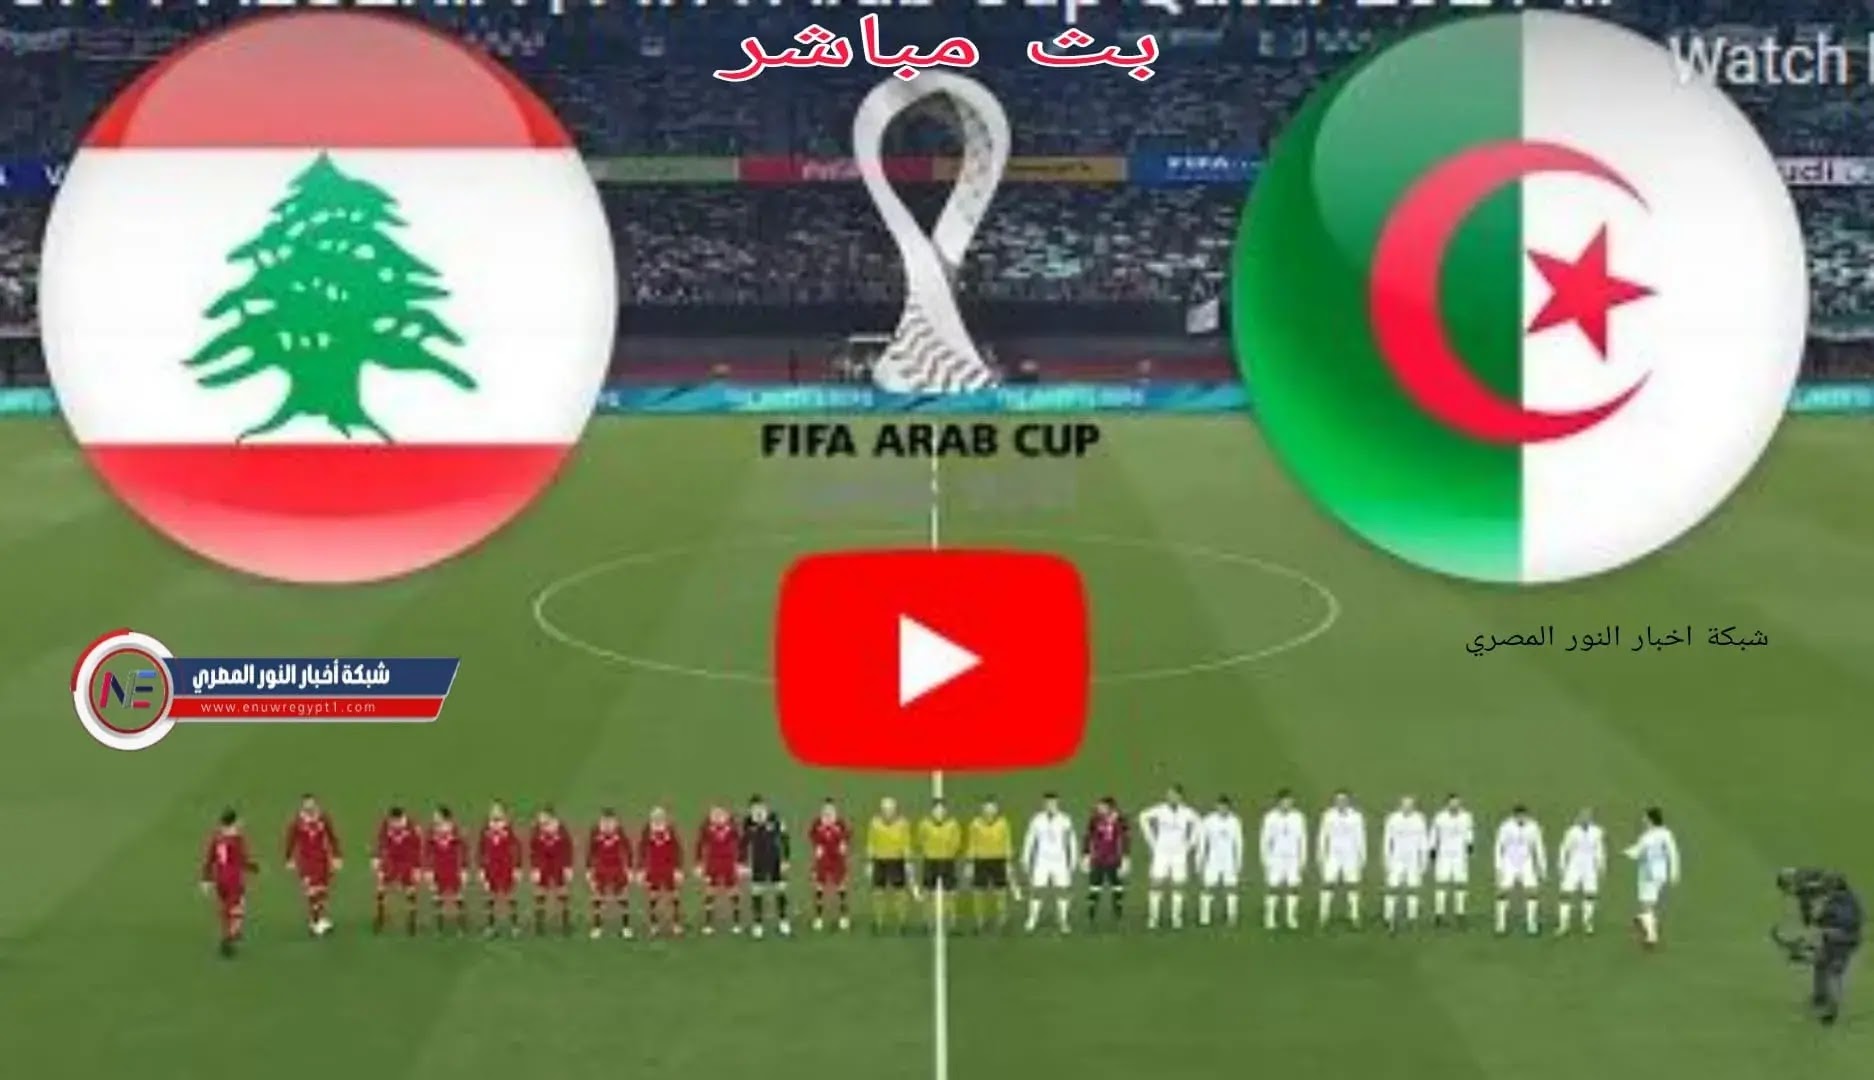 نتيجة مباراة الجزائر و لبنان بث مباشر بتاريخ اليوم 04-12-2021 في كأس العرب يلا شوت